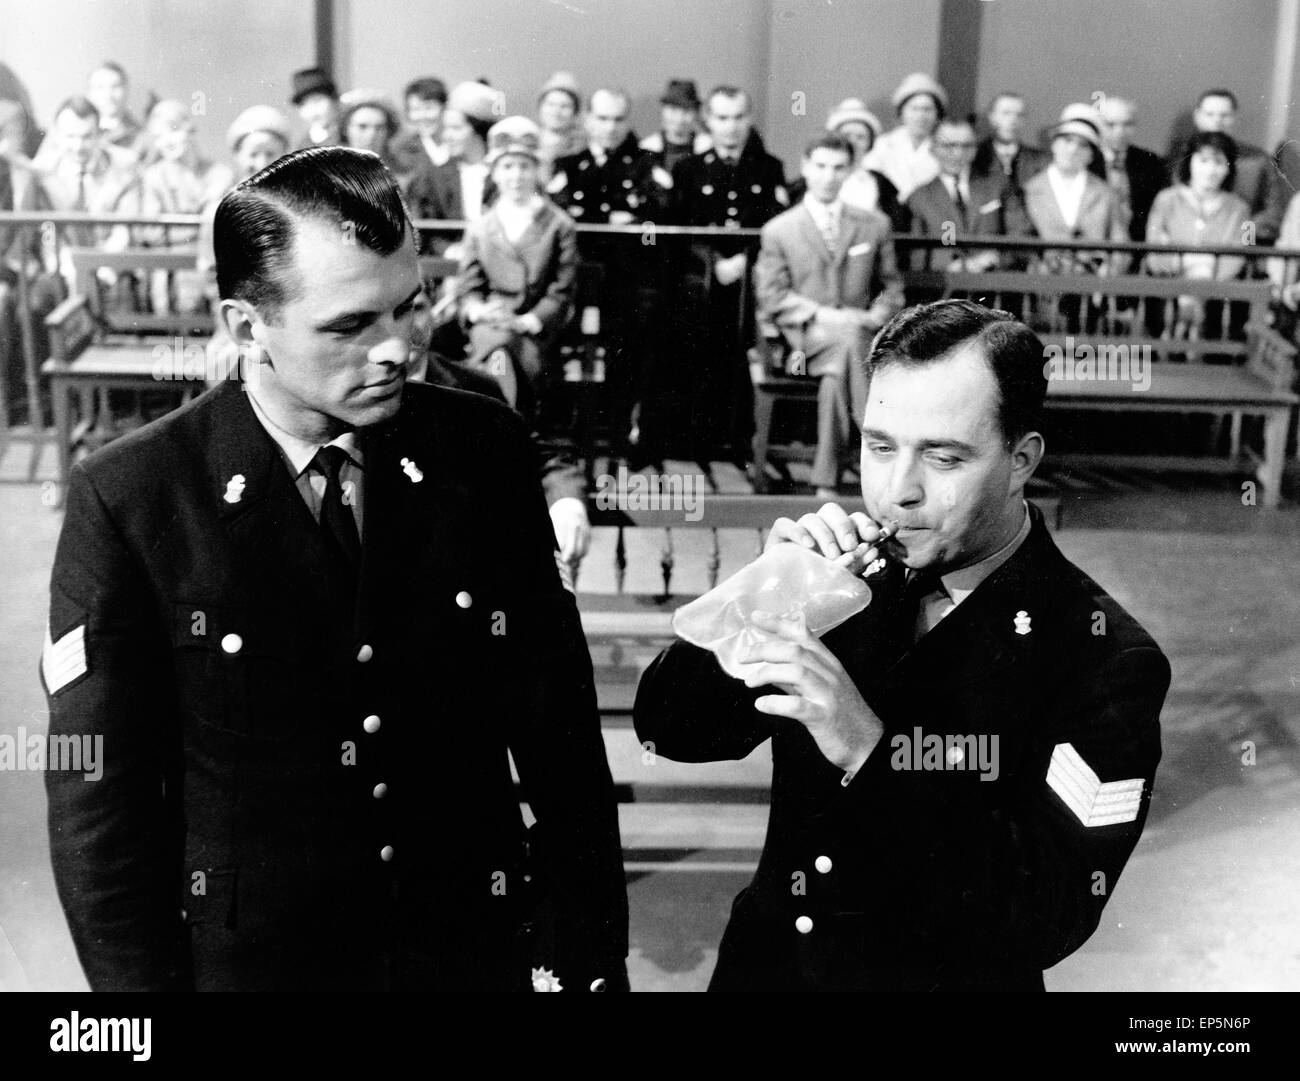 Polizeifunk ruft, Fernsehserie, Deutschland 1966 - 1970, Regie : Hermann Leitner, Szenenfoto : démonstration Alkoholtest Geric vor Banque D'Images